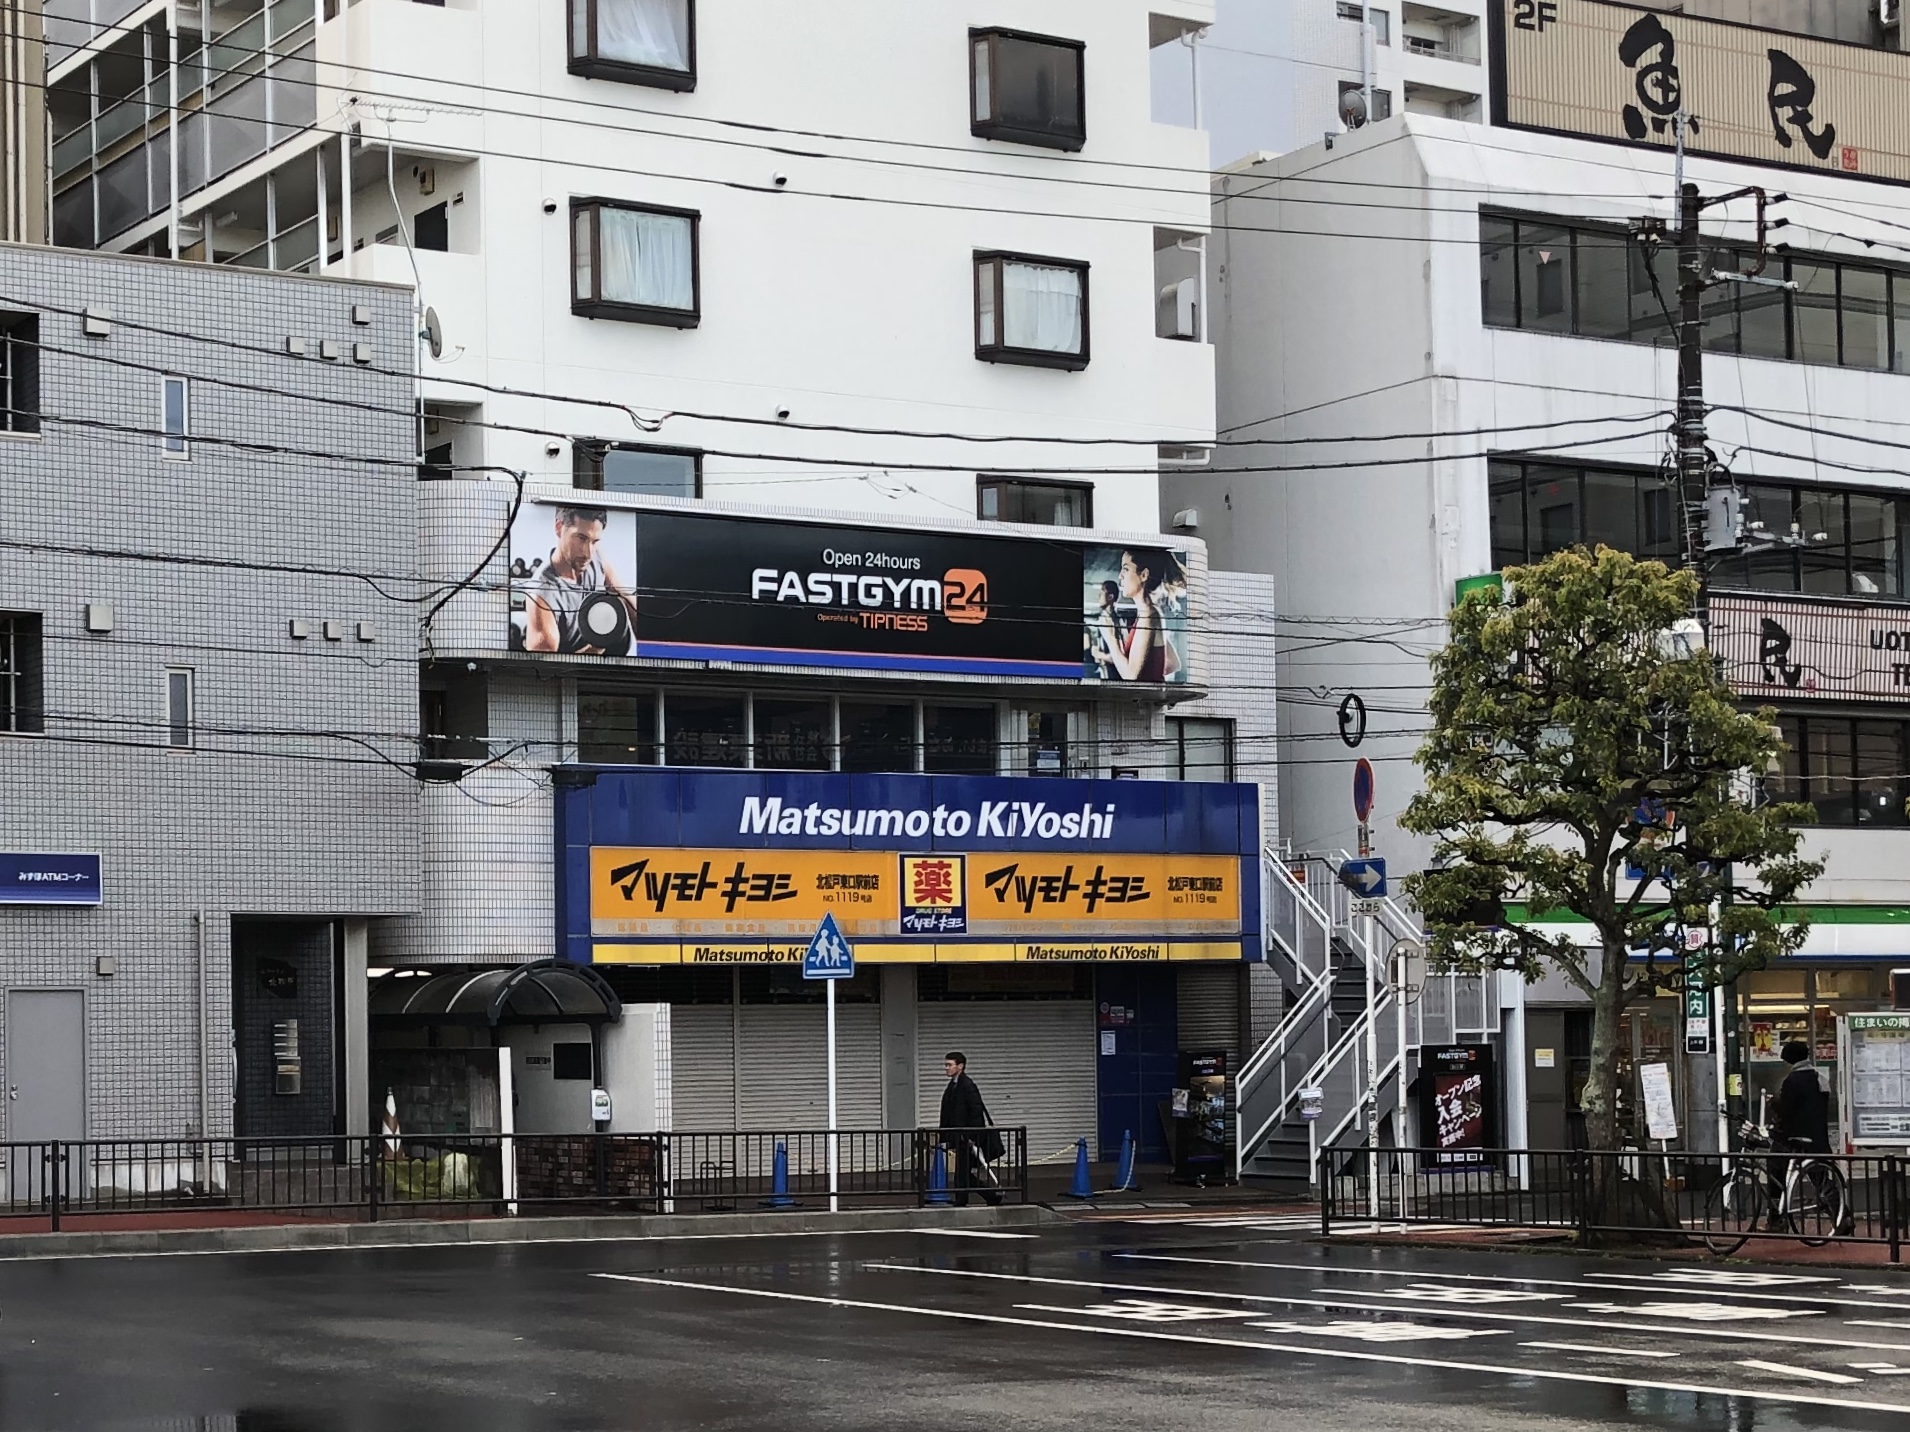 ファストジム24 北松戸店の外観